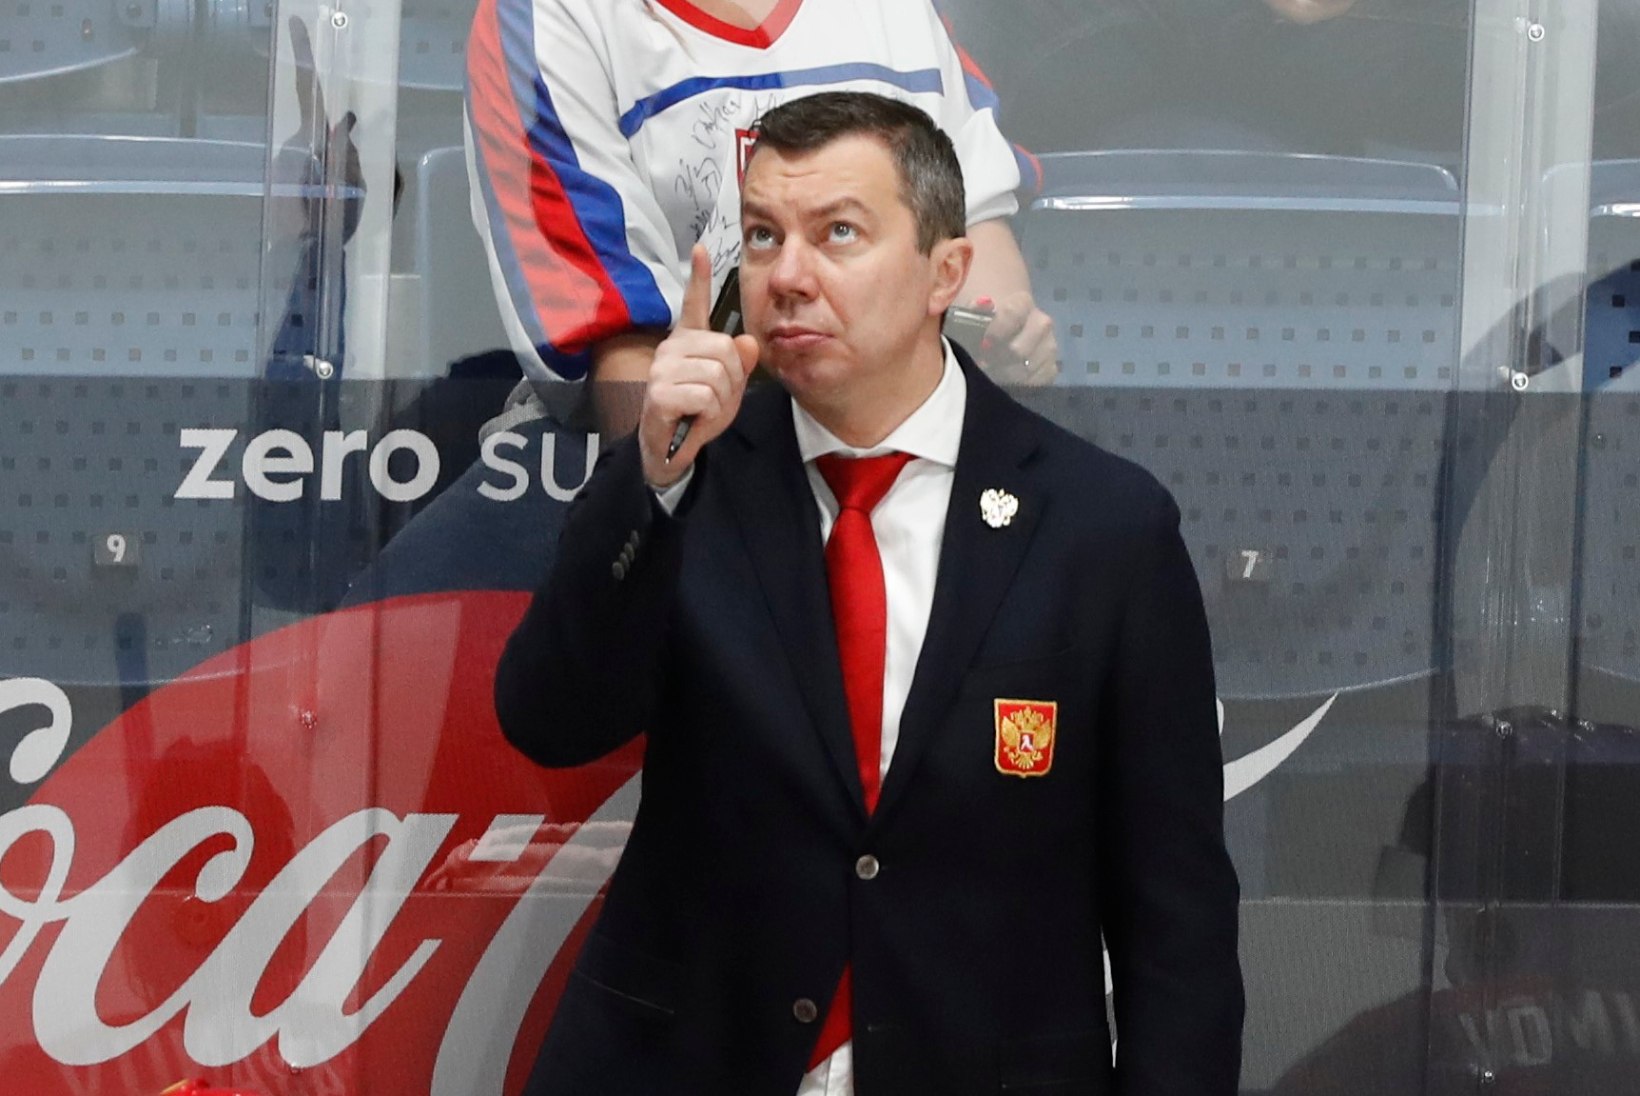 Vene hokikoondises möllavad kired, aga treenerit ei vallandata